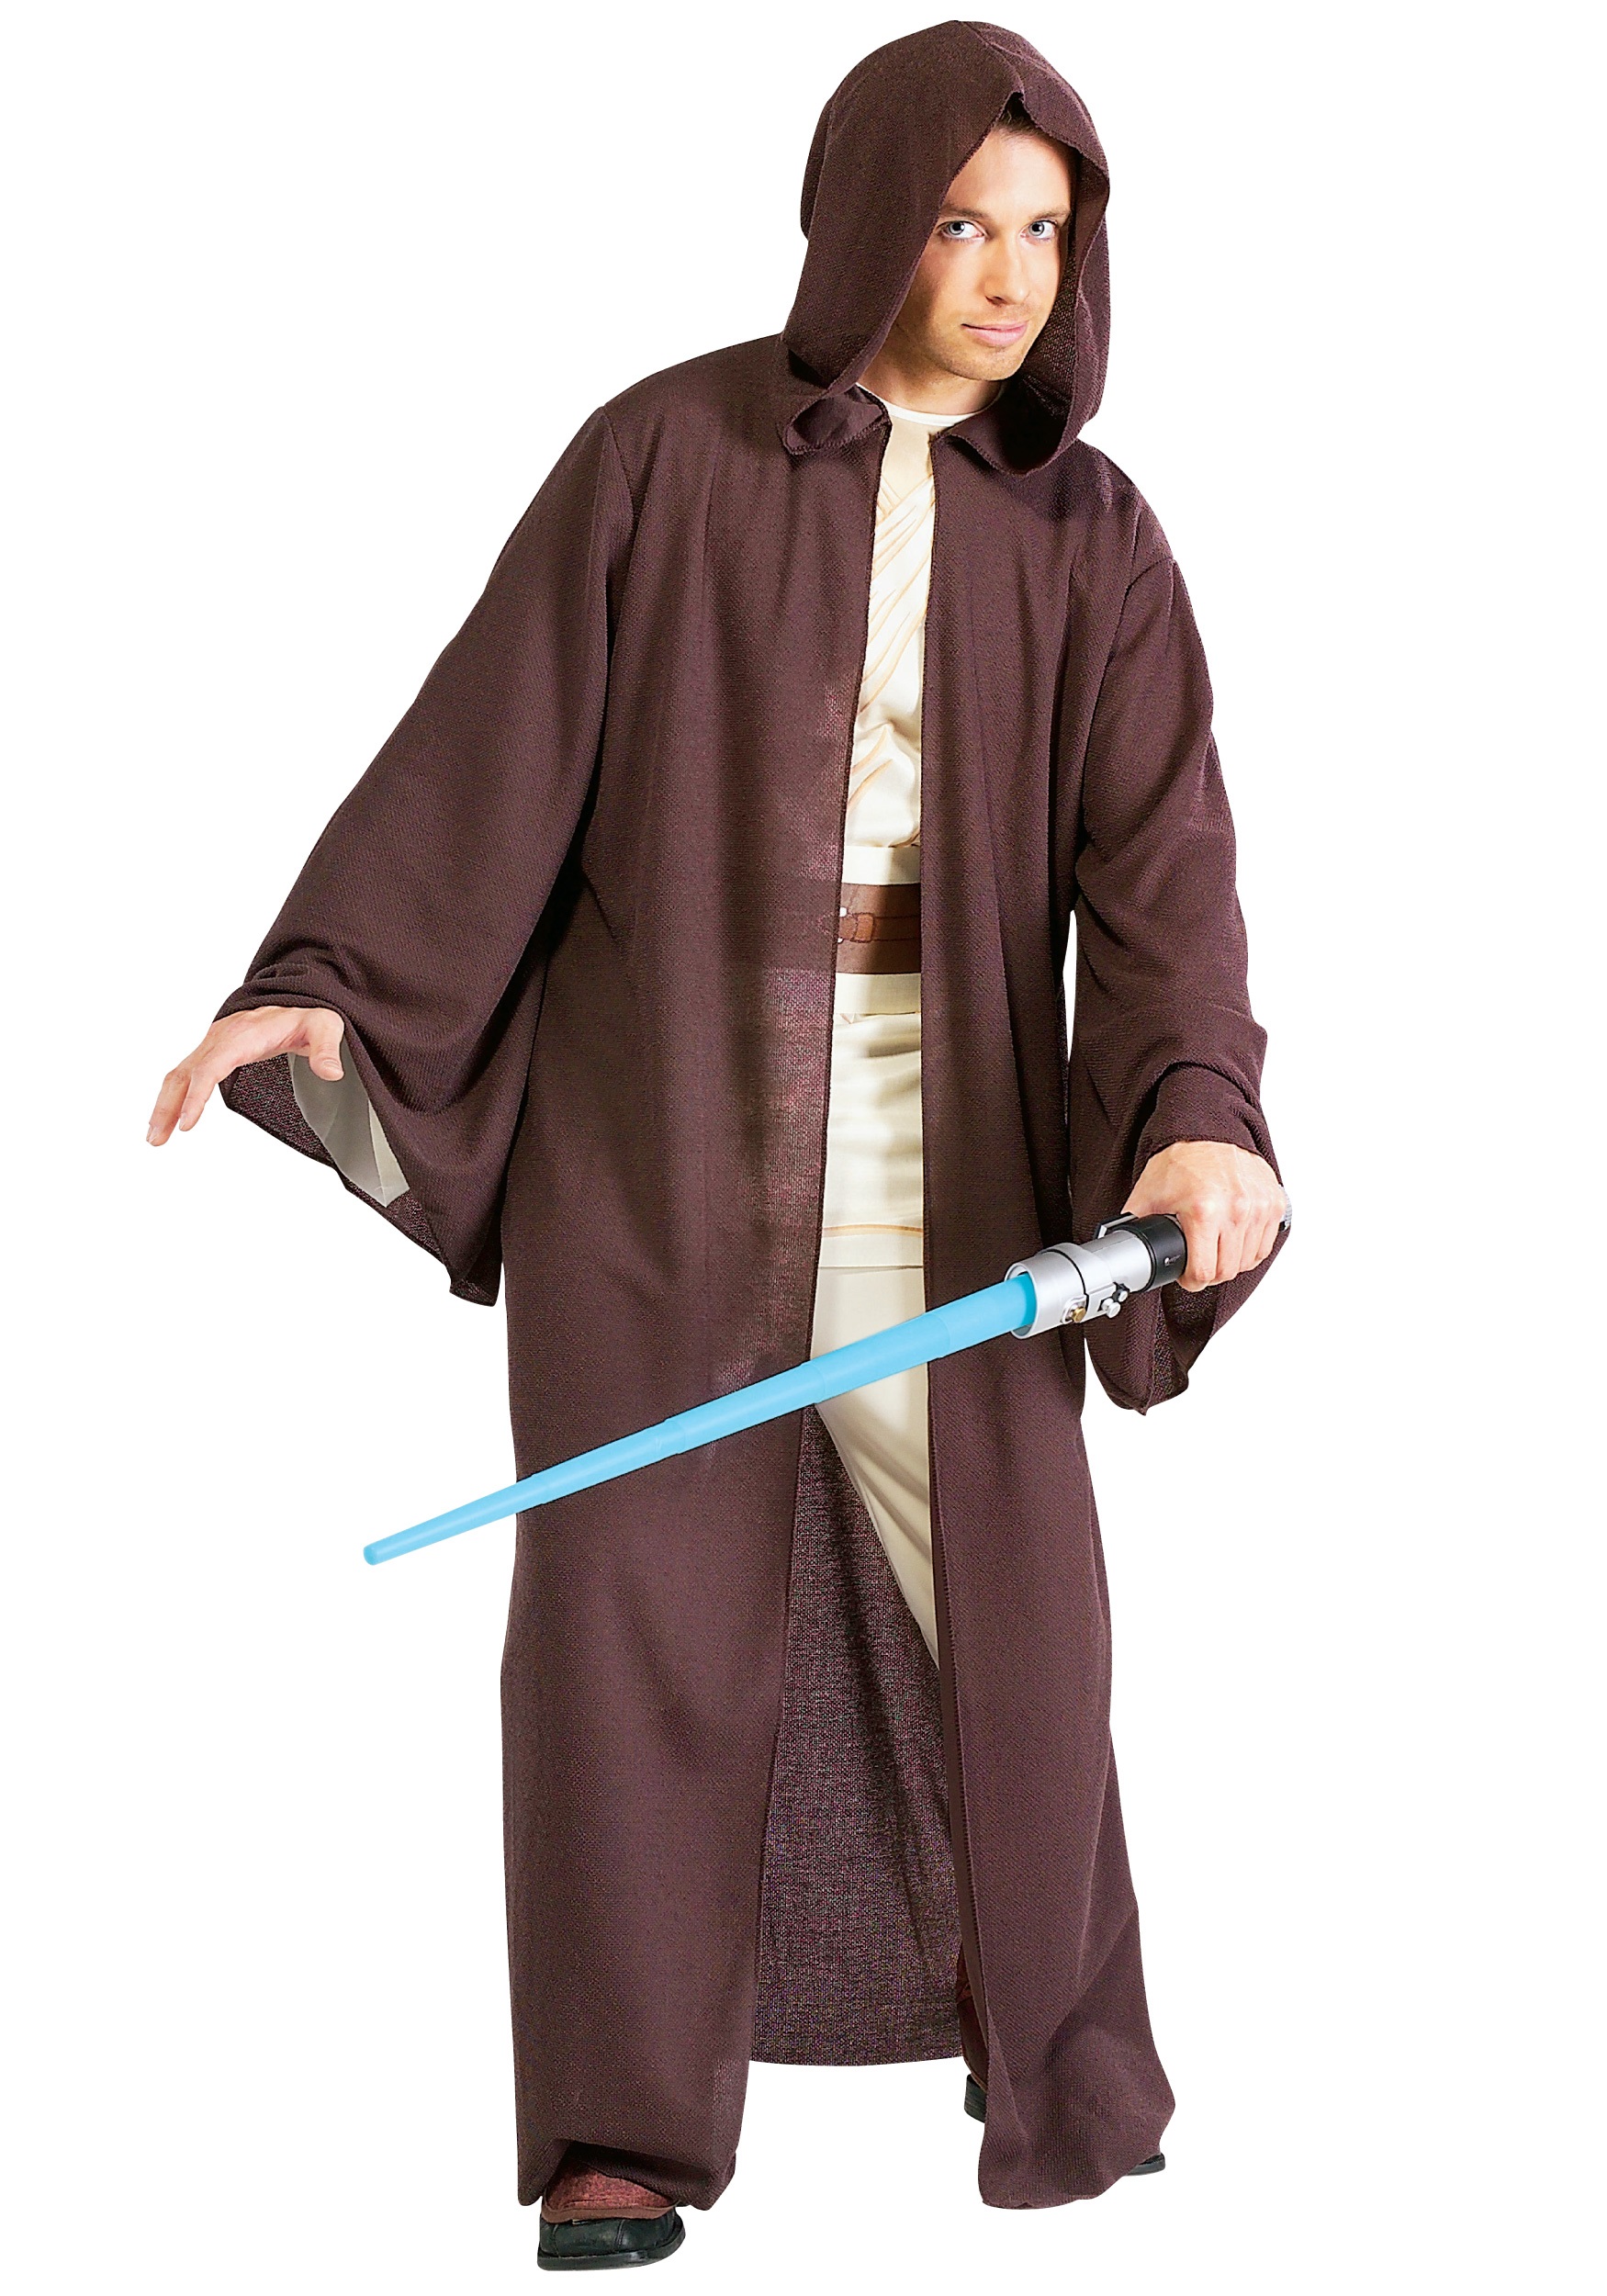 Star Wars Deluxe Jedi Robe Costume Fandom Shop - jedi robes shirt roblox